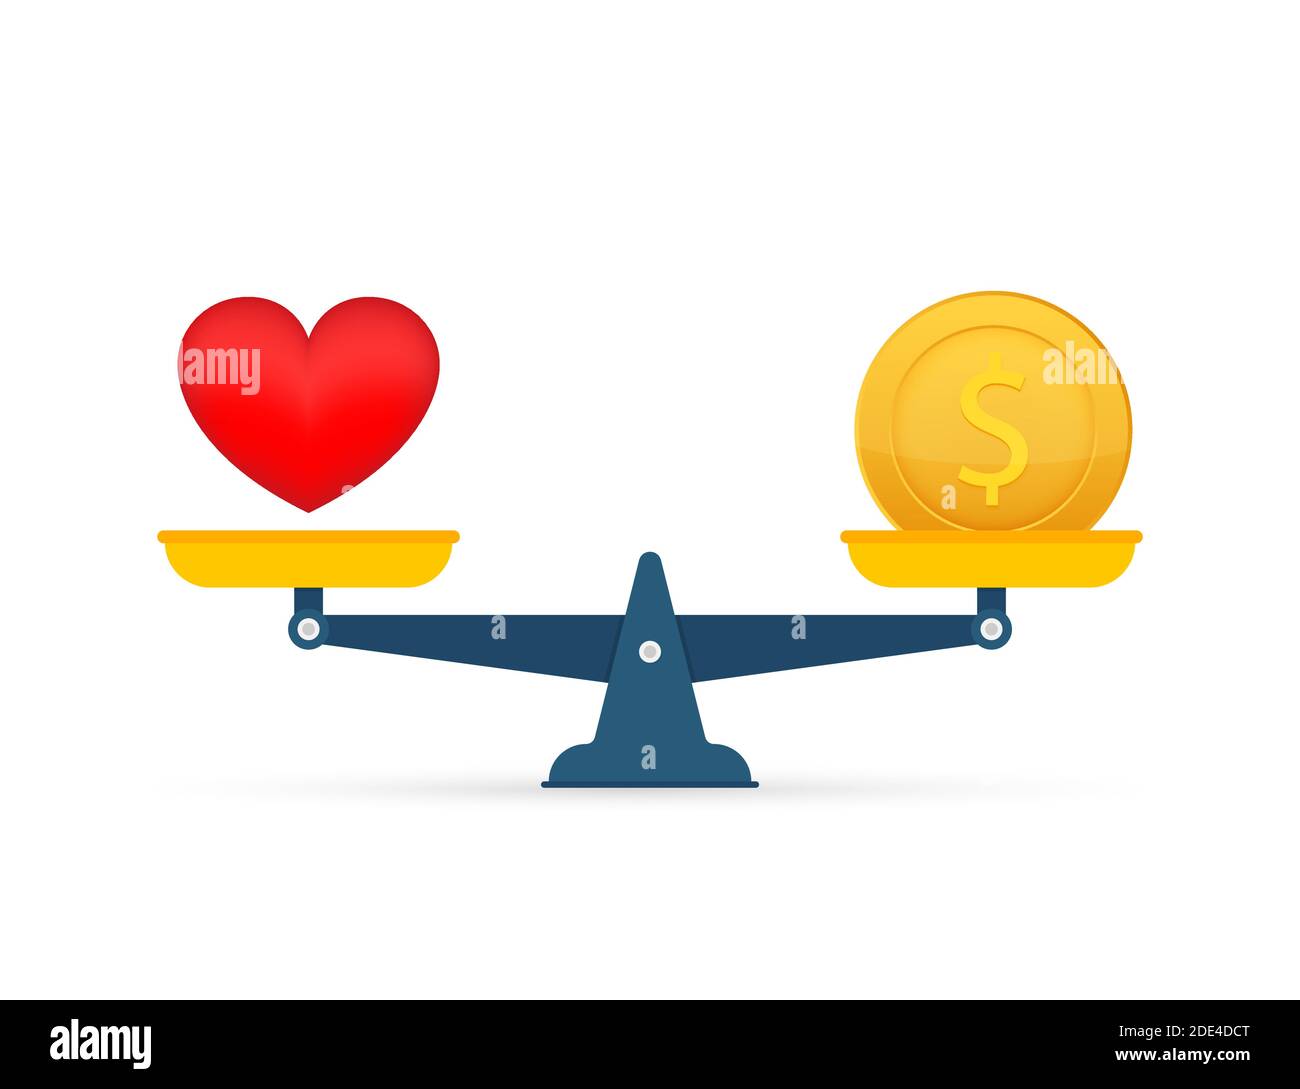 l'amour est l'argent sur balance icône. Équilibre entre l'argent et l'amour  sur échelle. Illustration du stock vectoriel Image Vectorielle Stock - Alamy